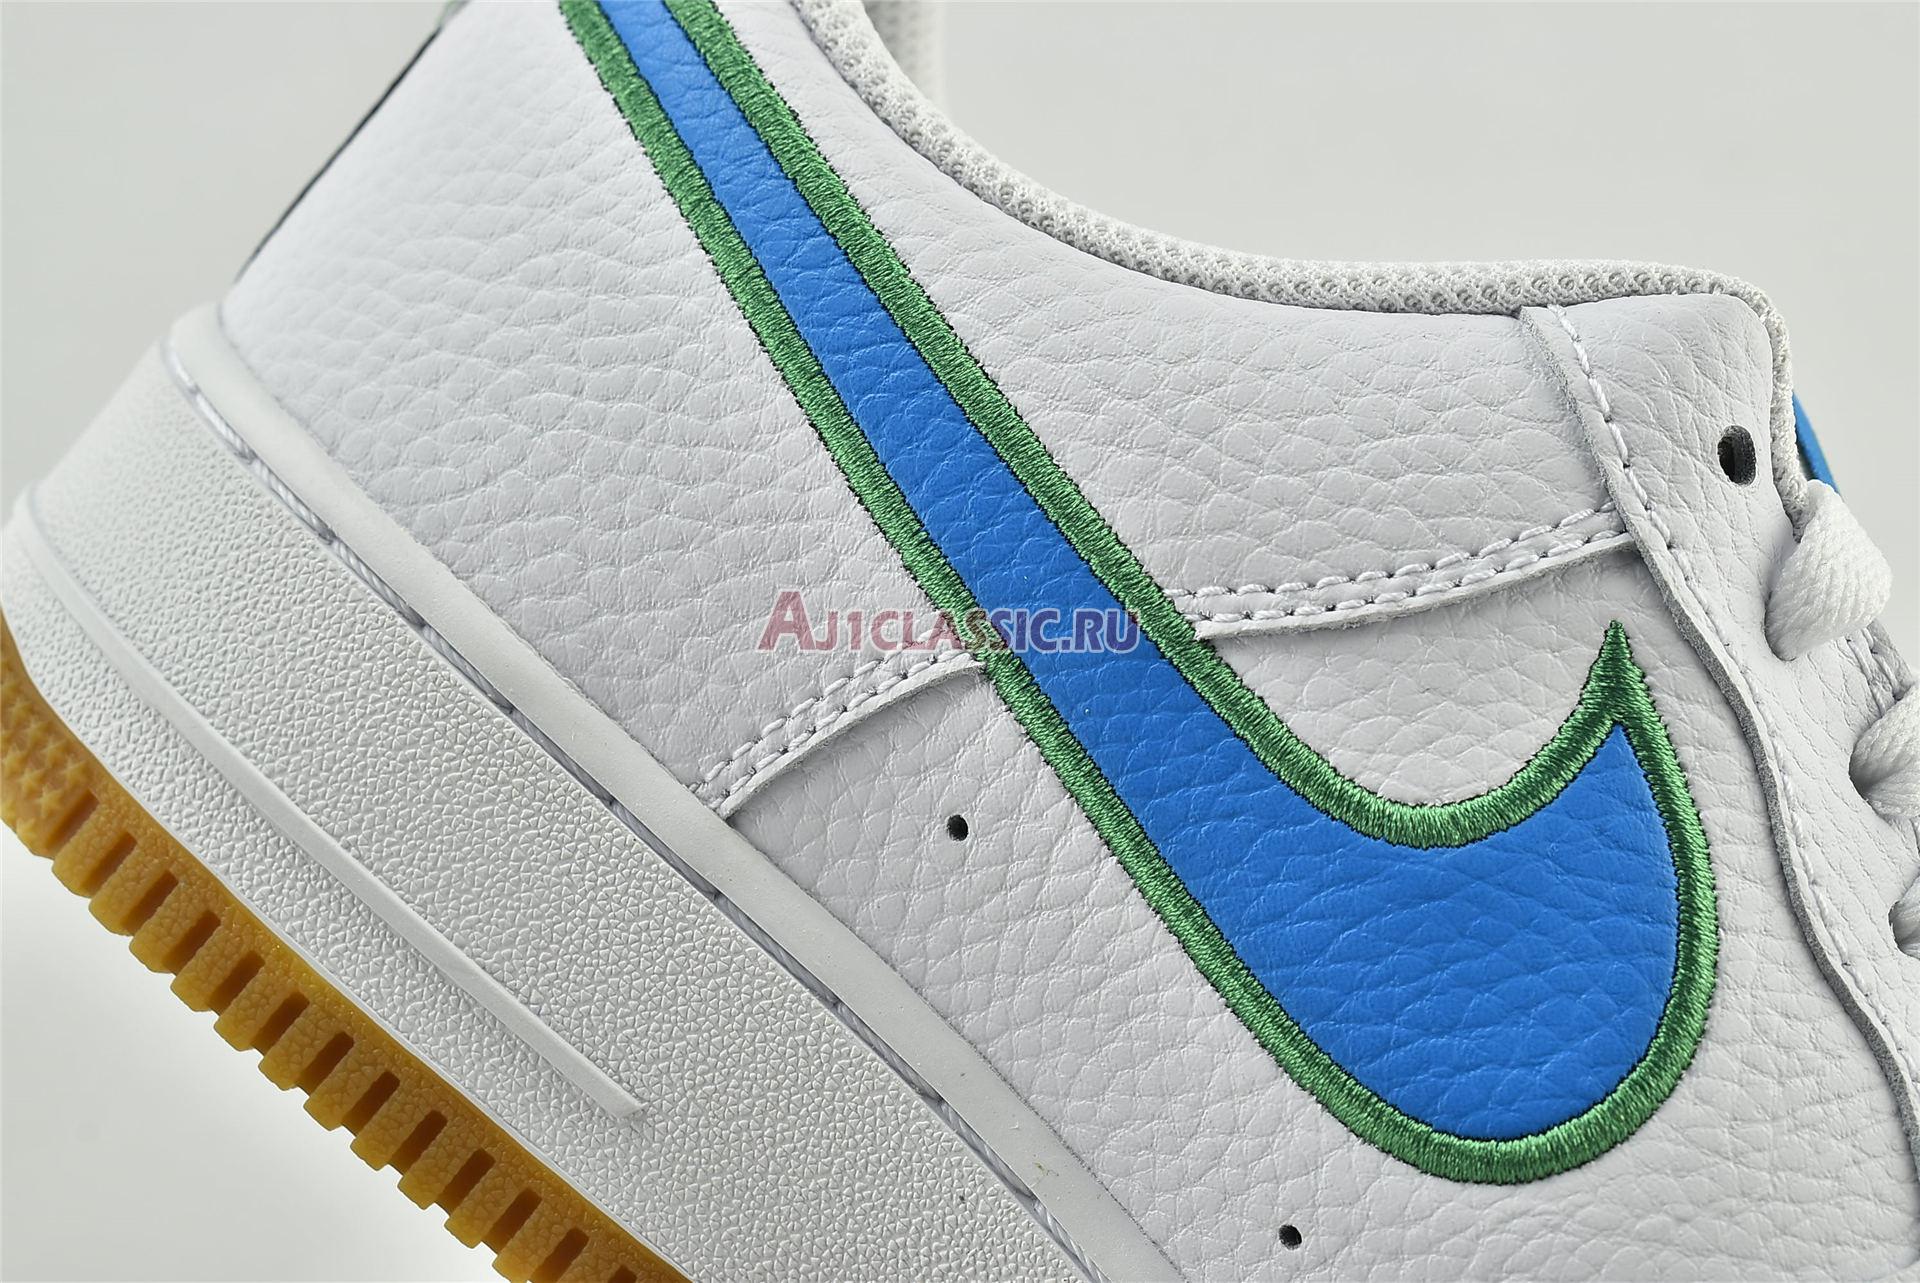 Nike Air Force 1 Low "White Bright Blue Green" DA4660-100